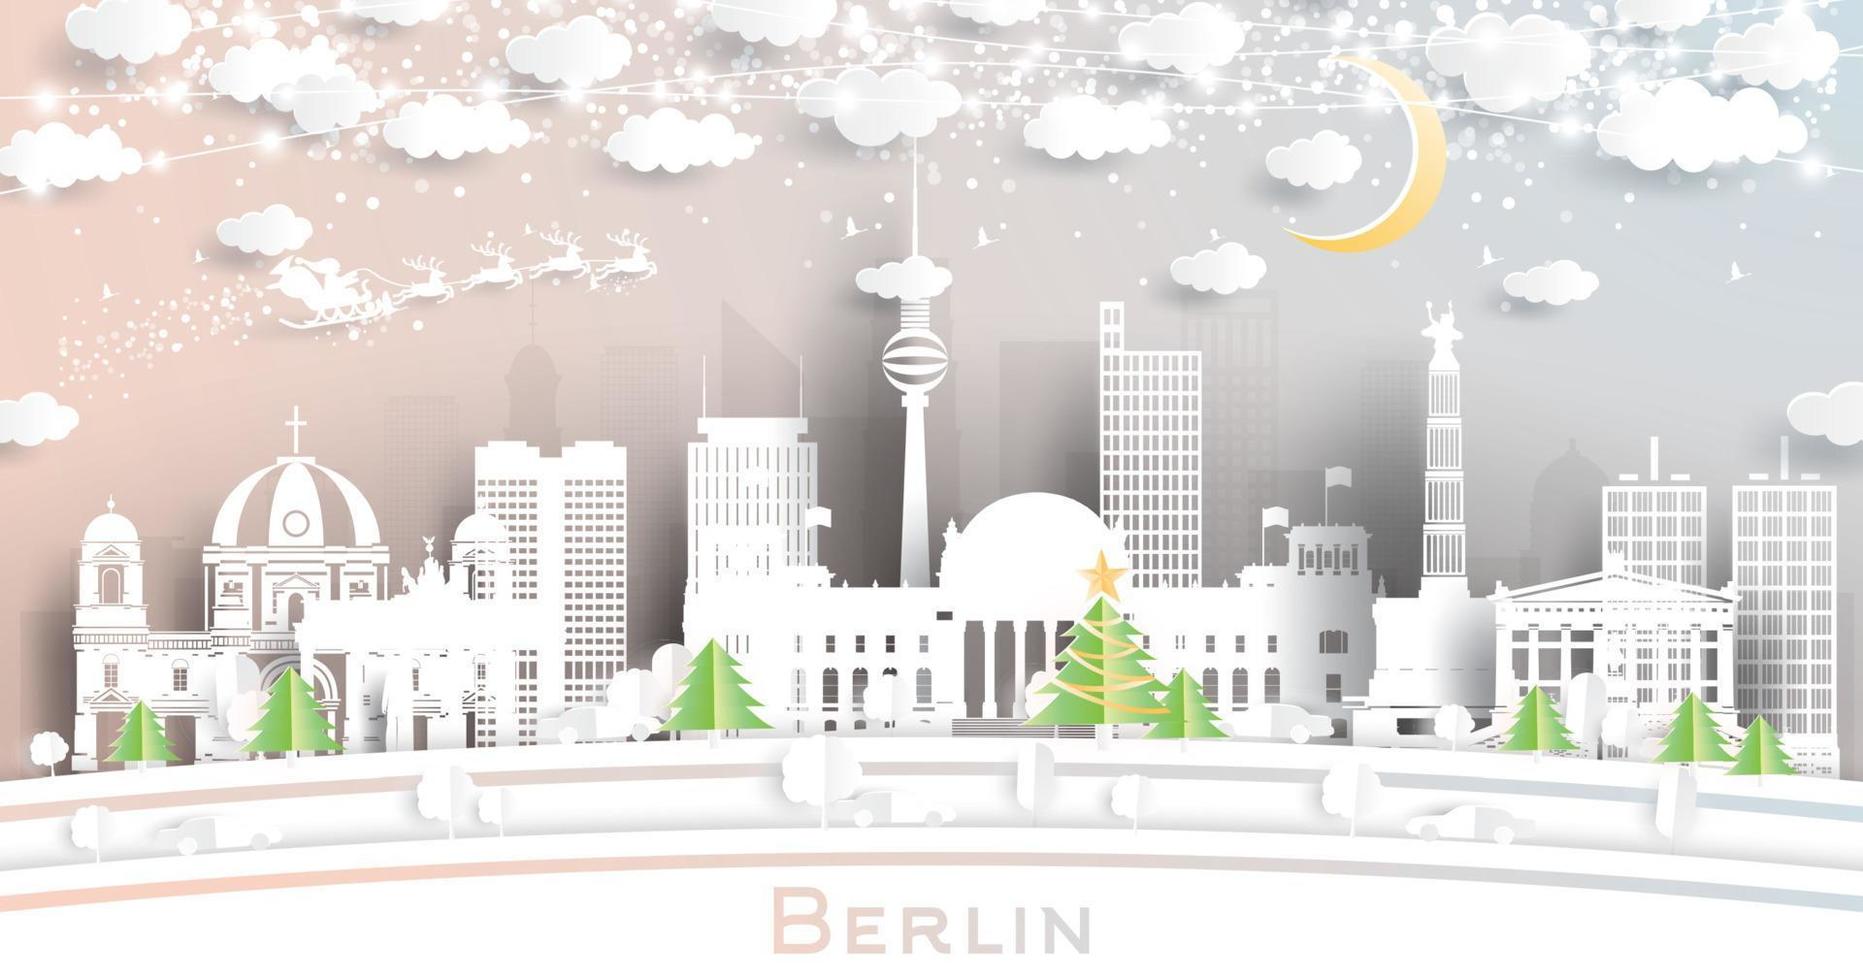 berlin Tyskland stad horisont i papper skära stil med snöflingor, måne och neon krans. vektor